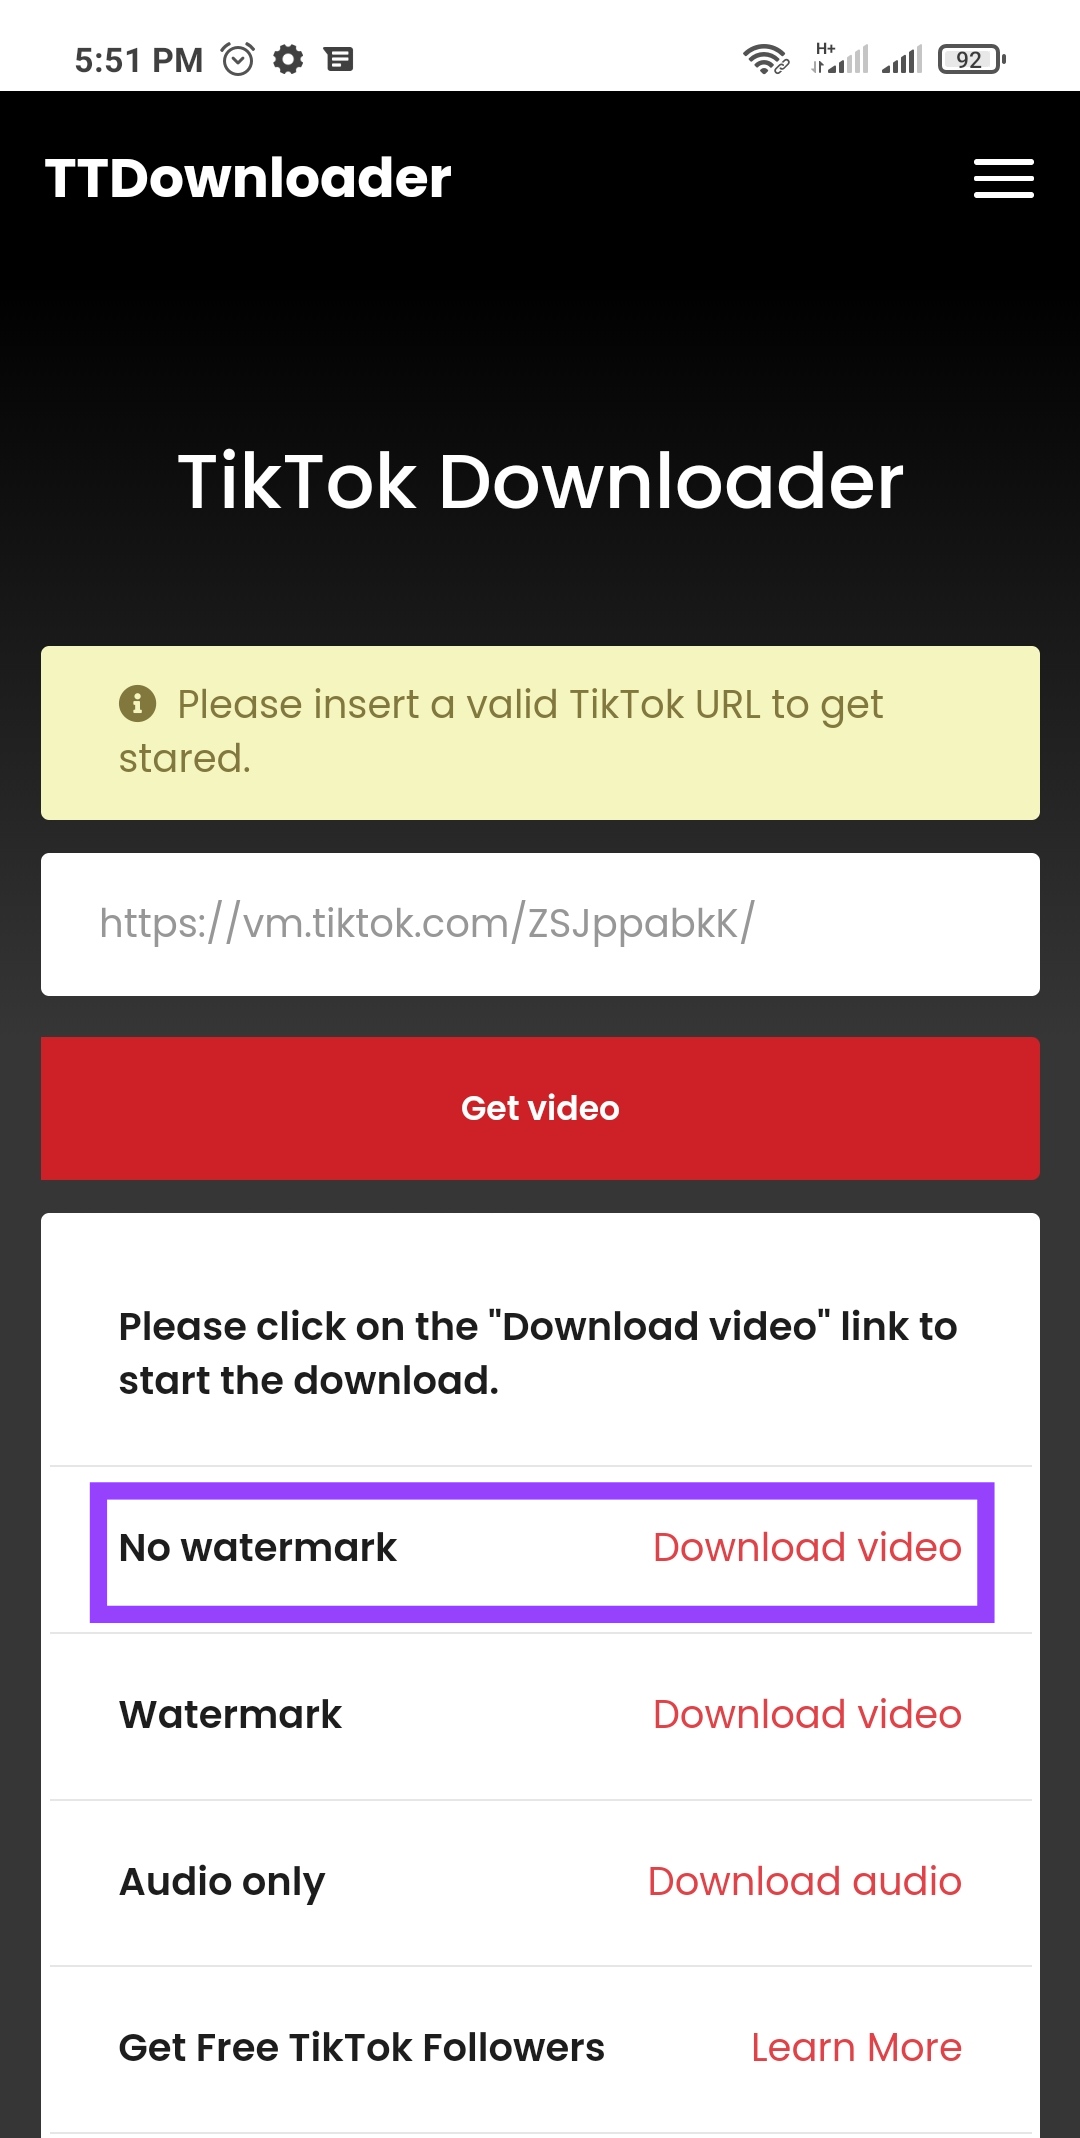 تنزيل الفيديو من خلال خيار No watermark على الهاتف